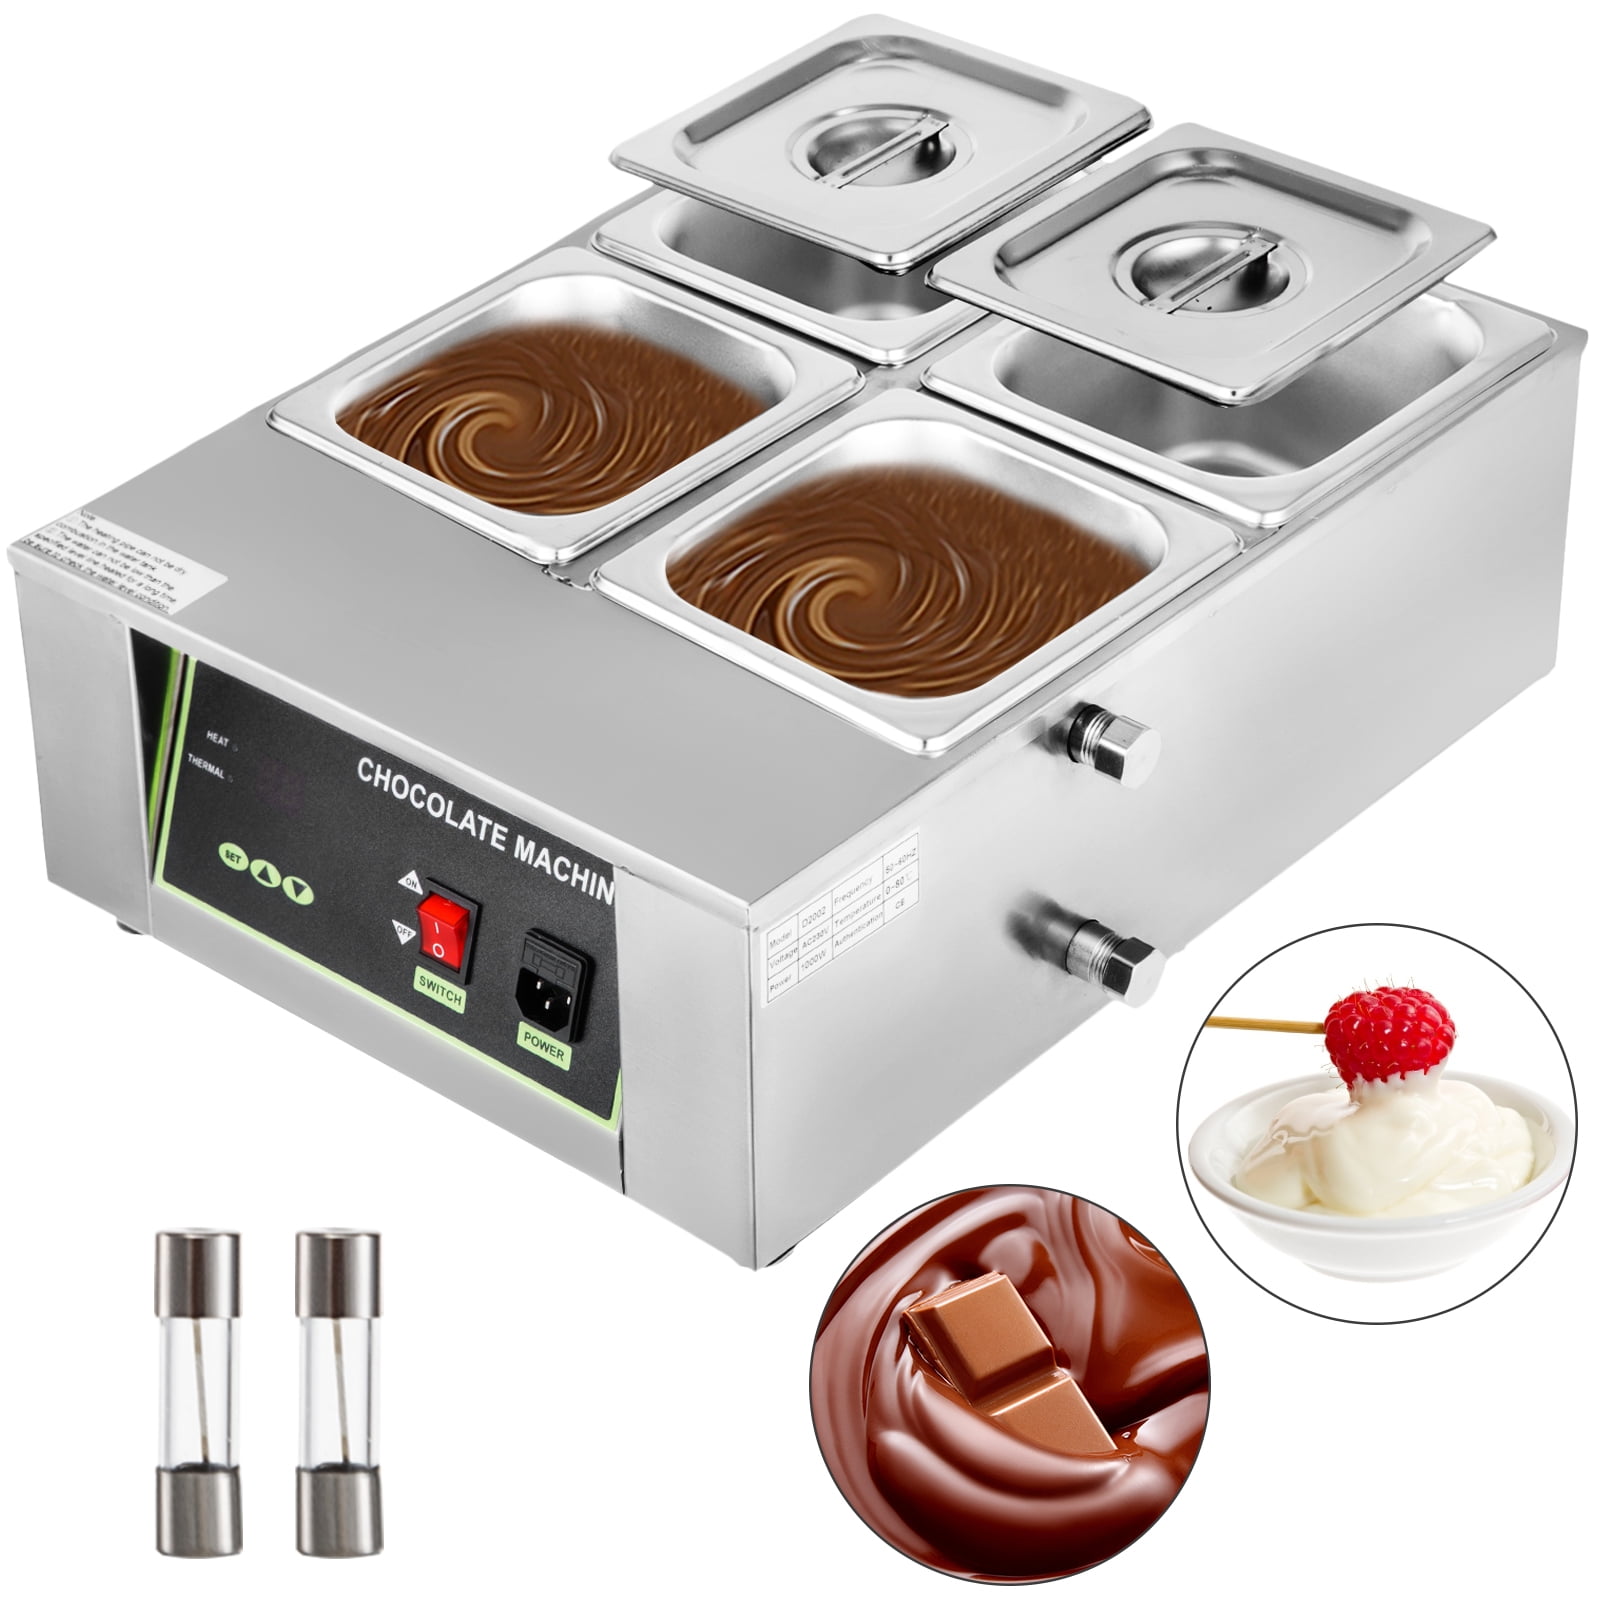 INTBUYING 110V White Double Chocolate Melting Pot machine for Chocolate Melting